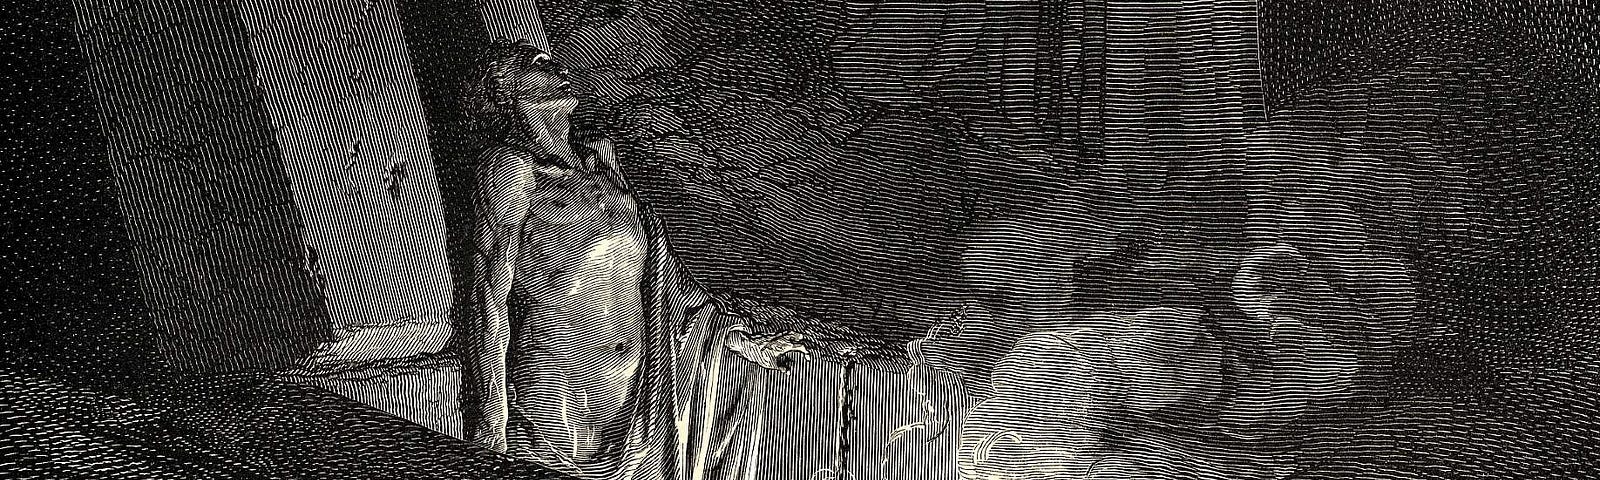 Gustave Doré illustrating Canto 10 of Divine Comedy, Inferno, by Dante Alighieri. Farinata degli Uberti addresses Dante.